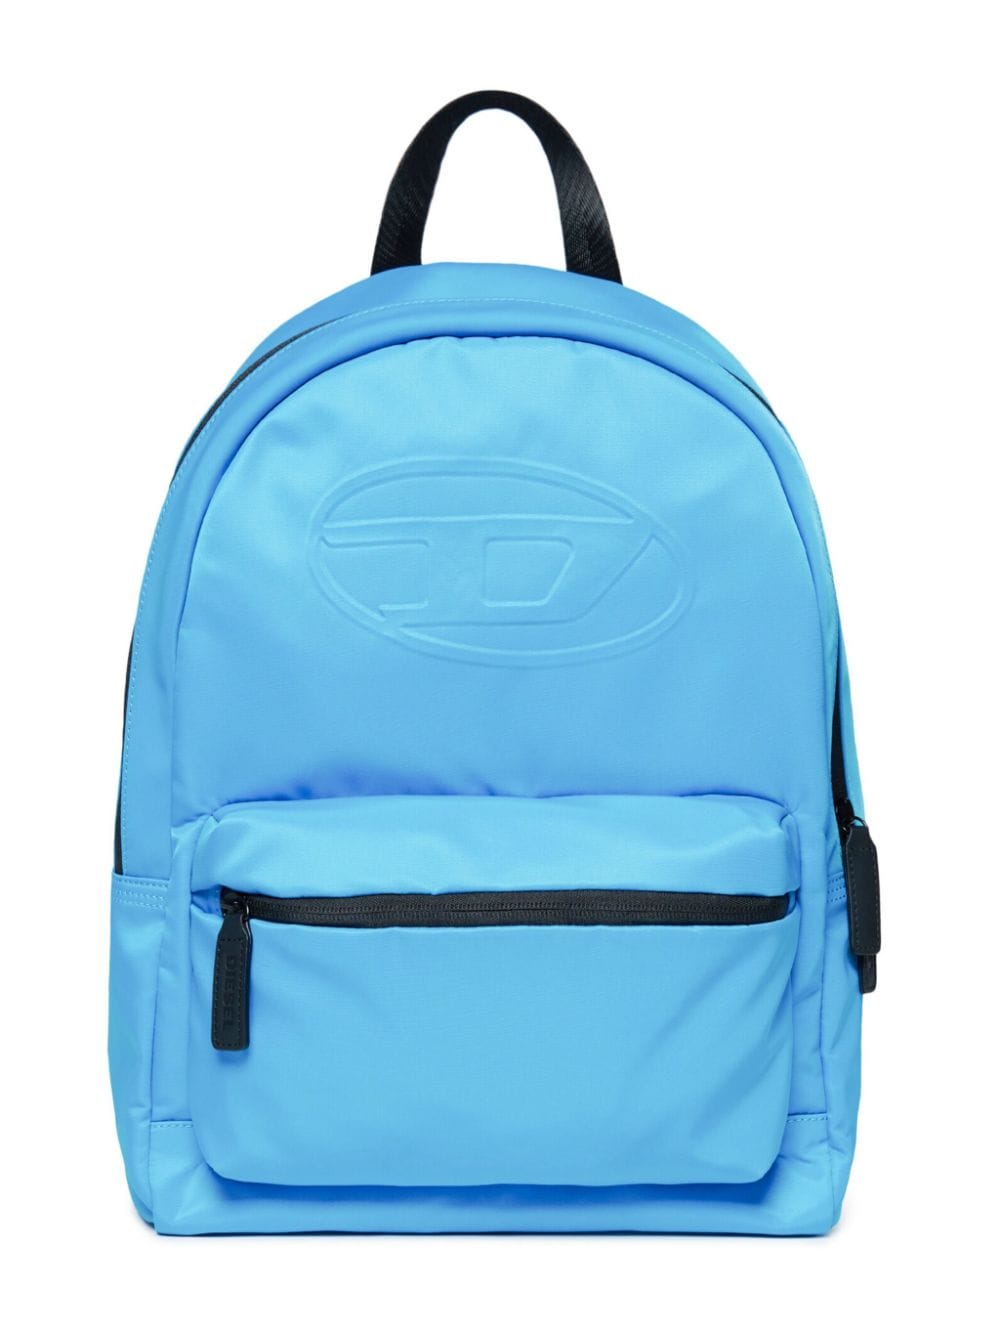 Diesel Kids Oval D-embossed backpack - Blue von Diesel Kids